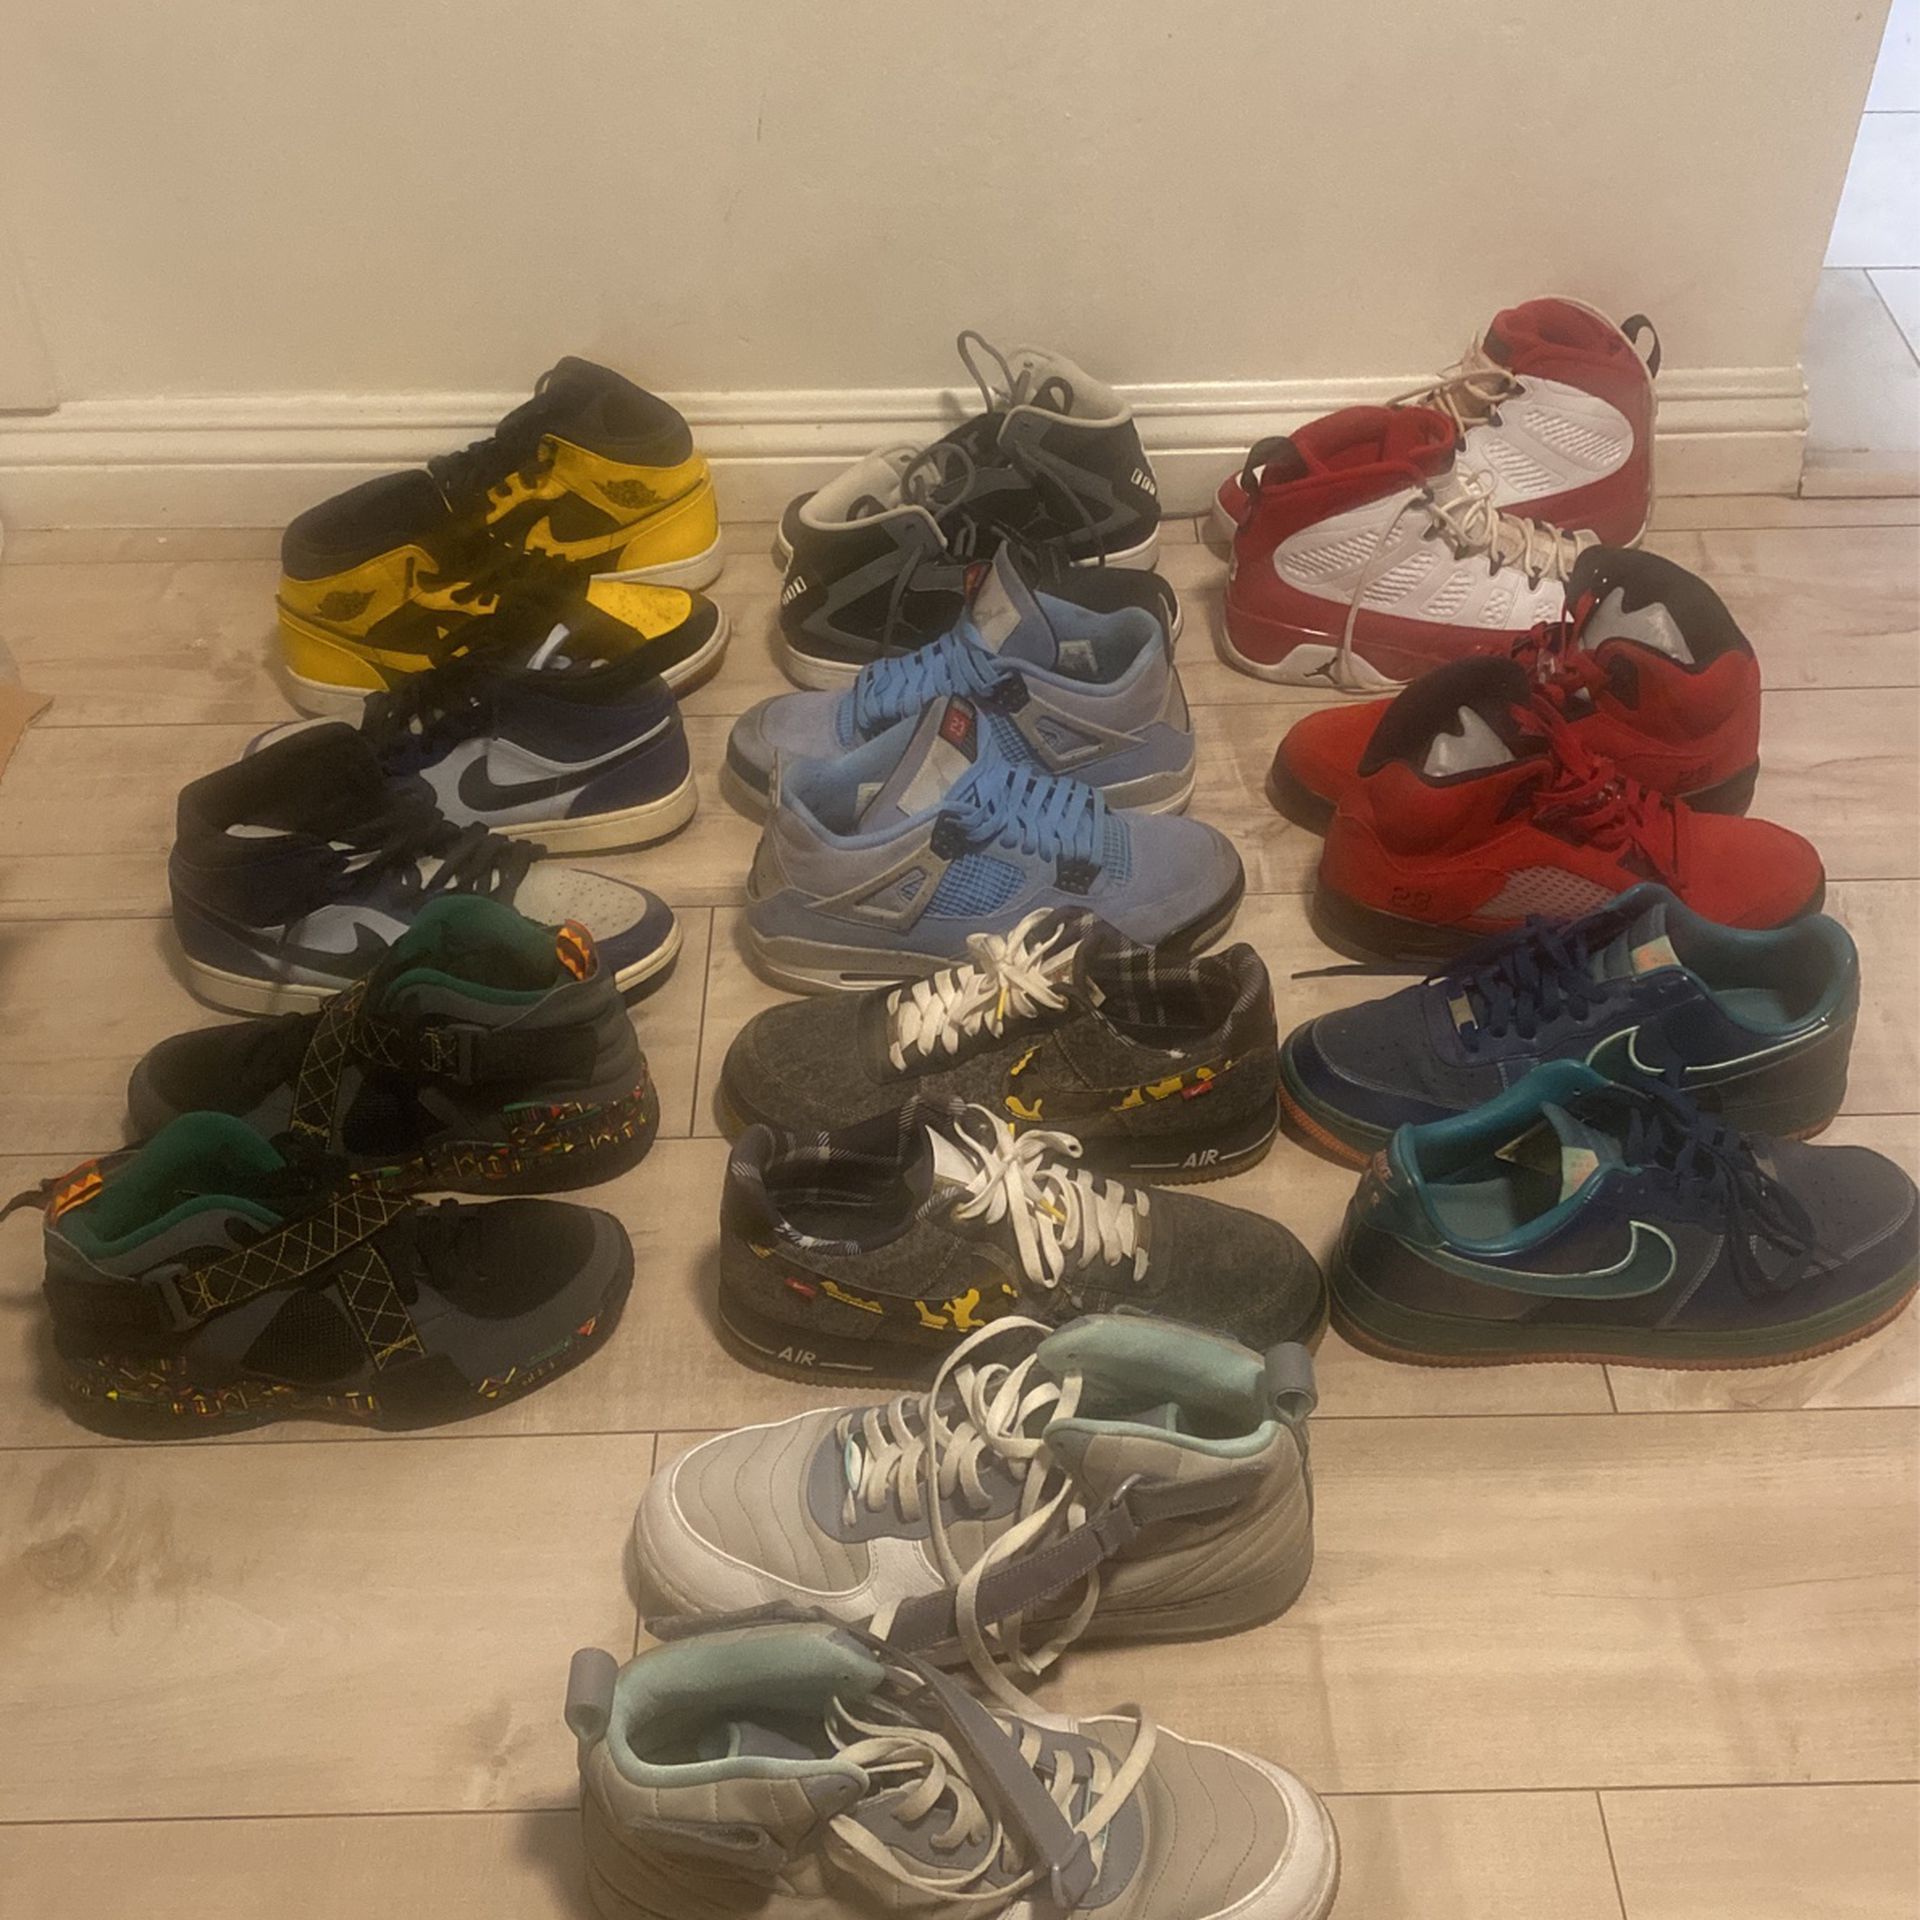 Men’s Jordan Sneaker Basketball Men’s Shoes Retro Strap & More OG in Different Sizes Used Starting At $140 For Sizes & Model View Description 